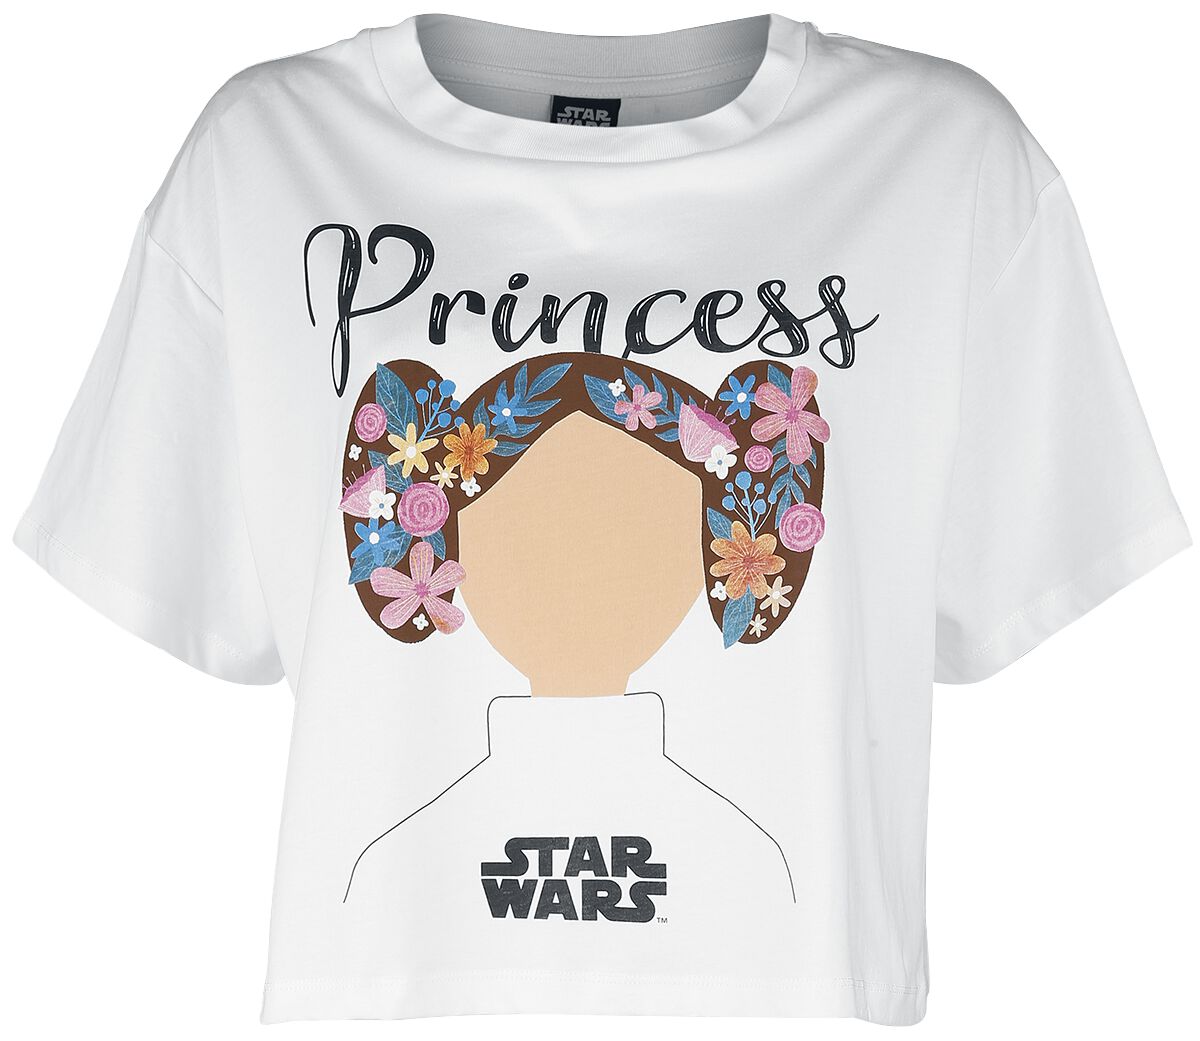 Star Wars - Star Wars - Princess Lea - T-Shirt - weiß - EMP Exklusiv!